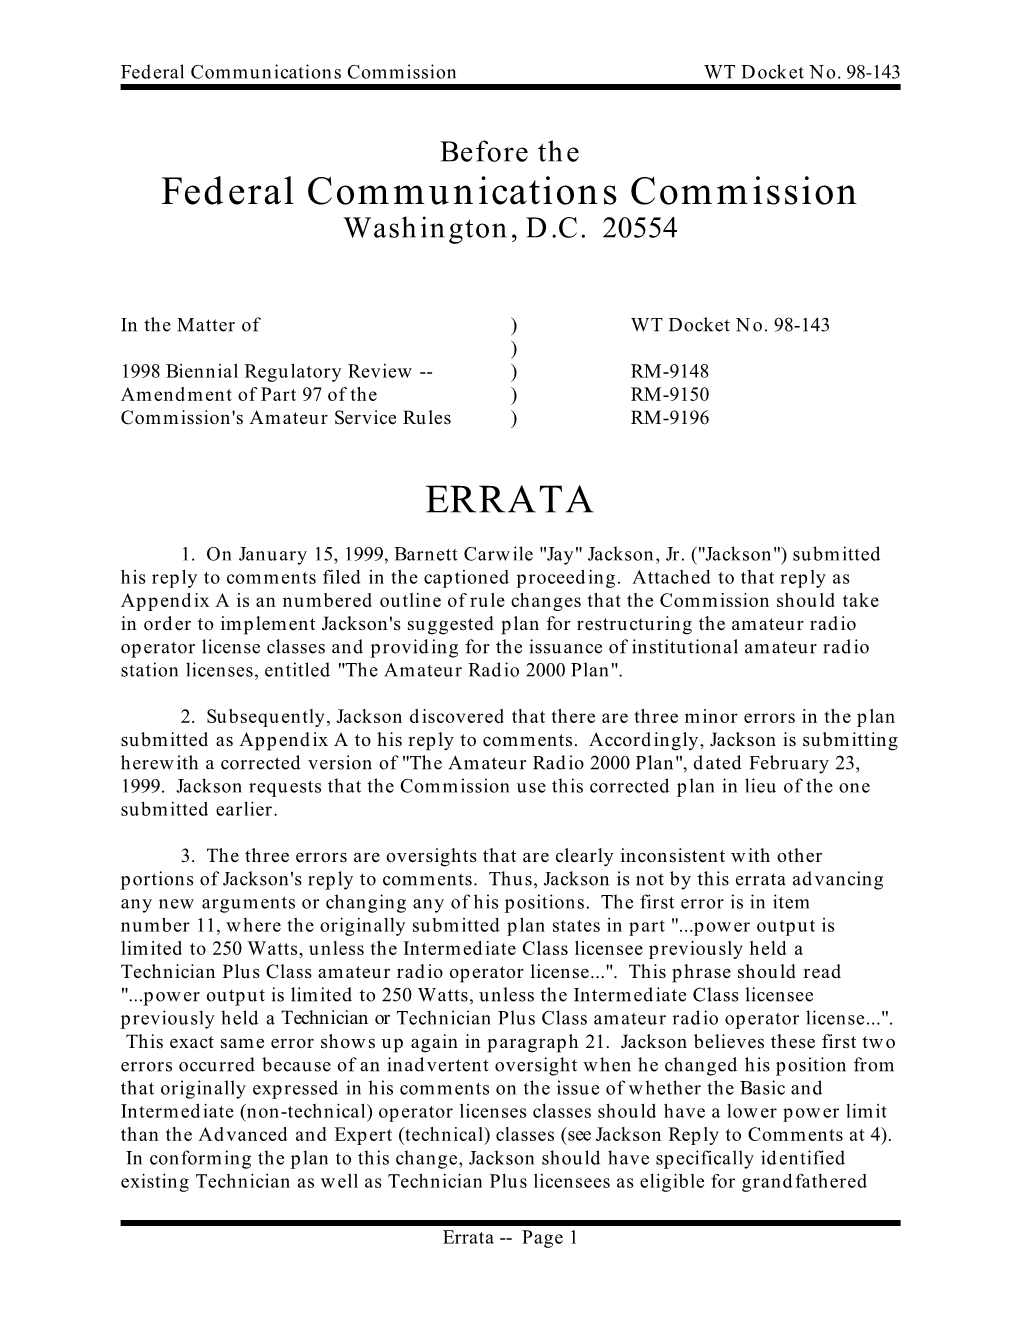 Federal Communications Commission ERRATA